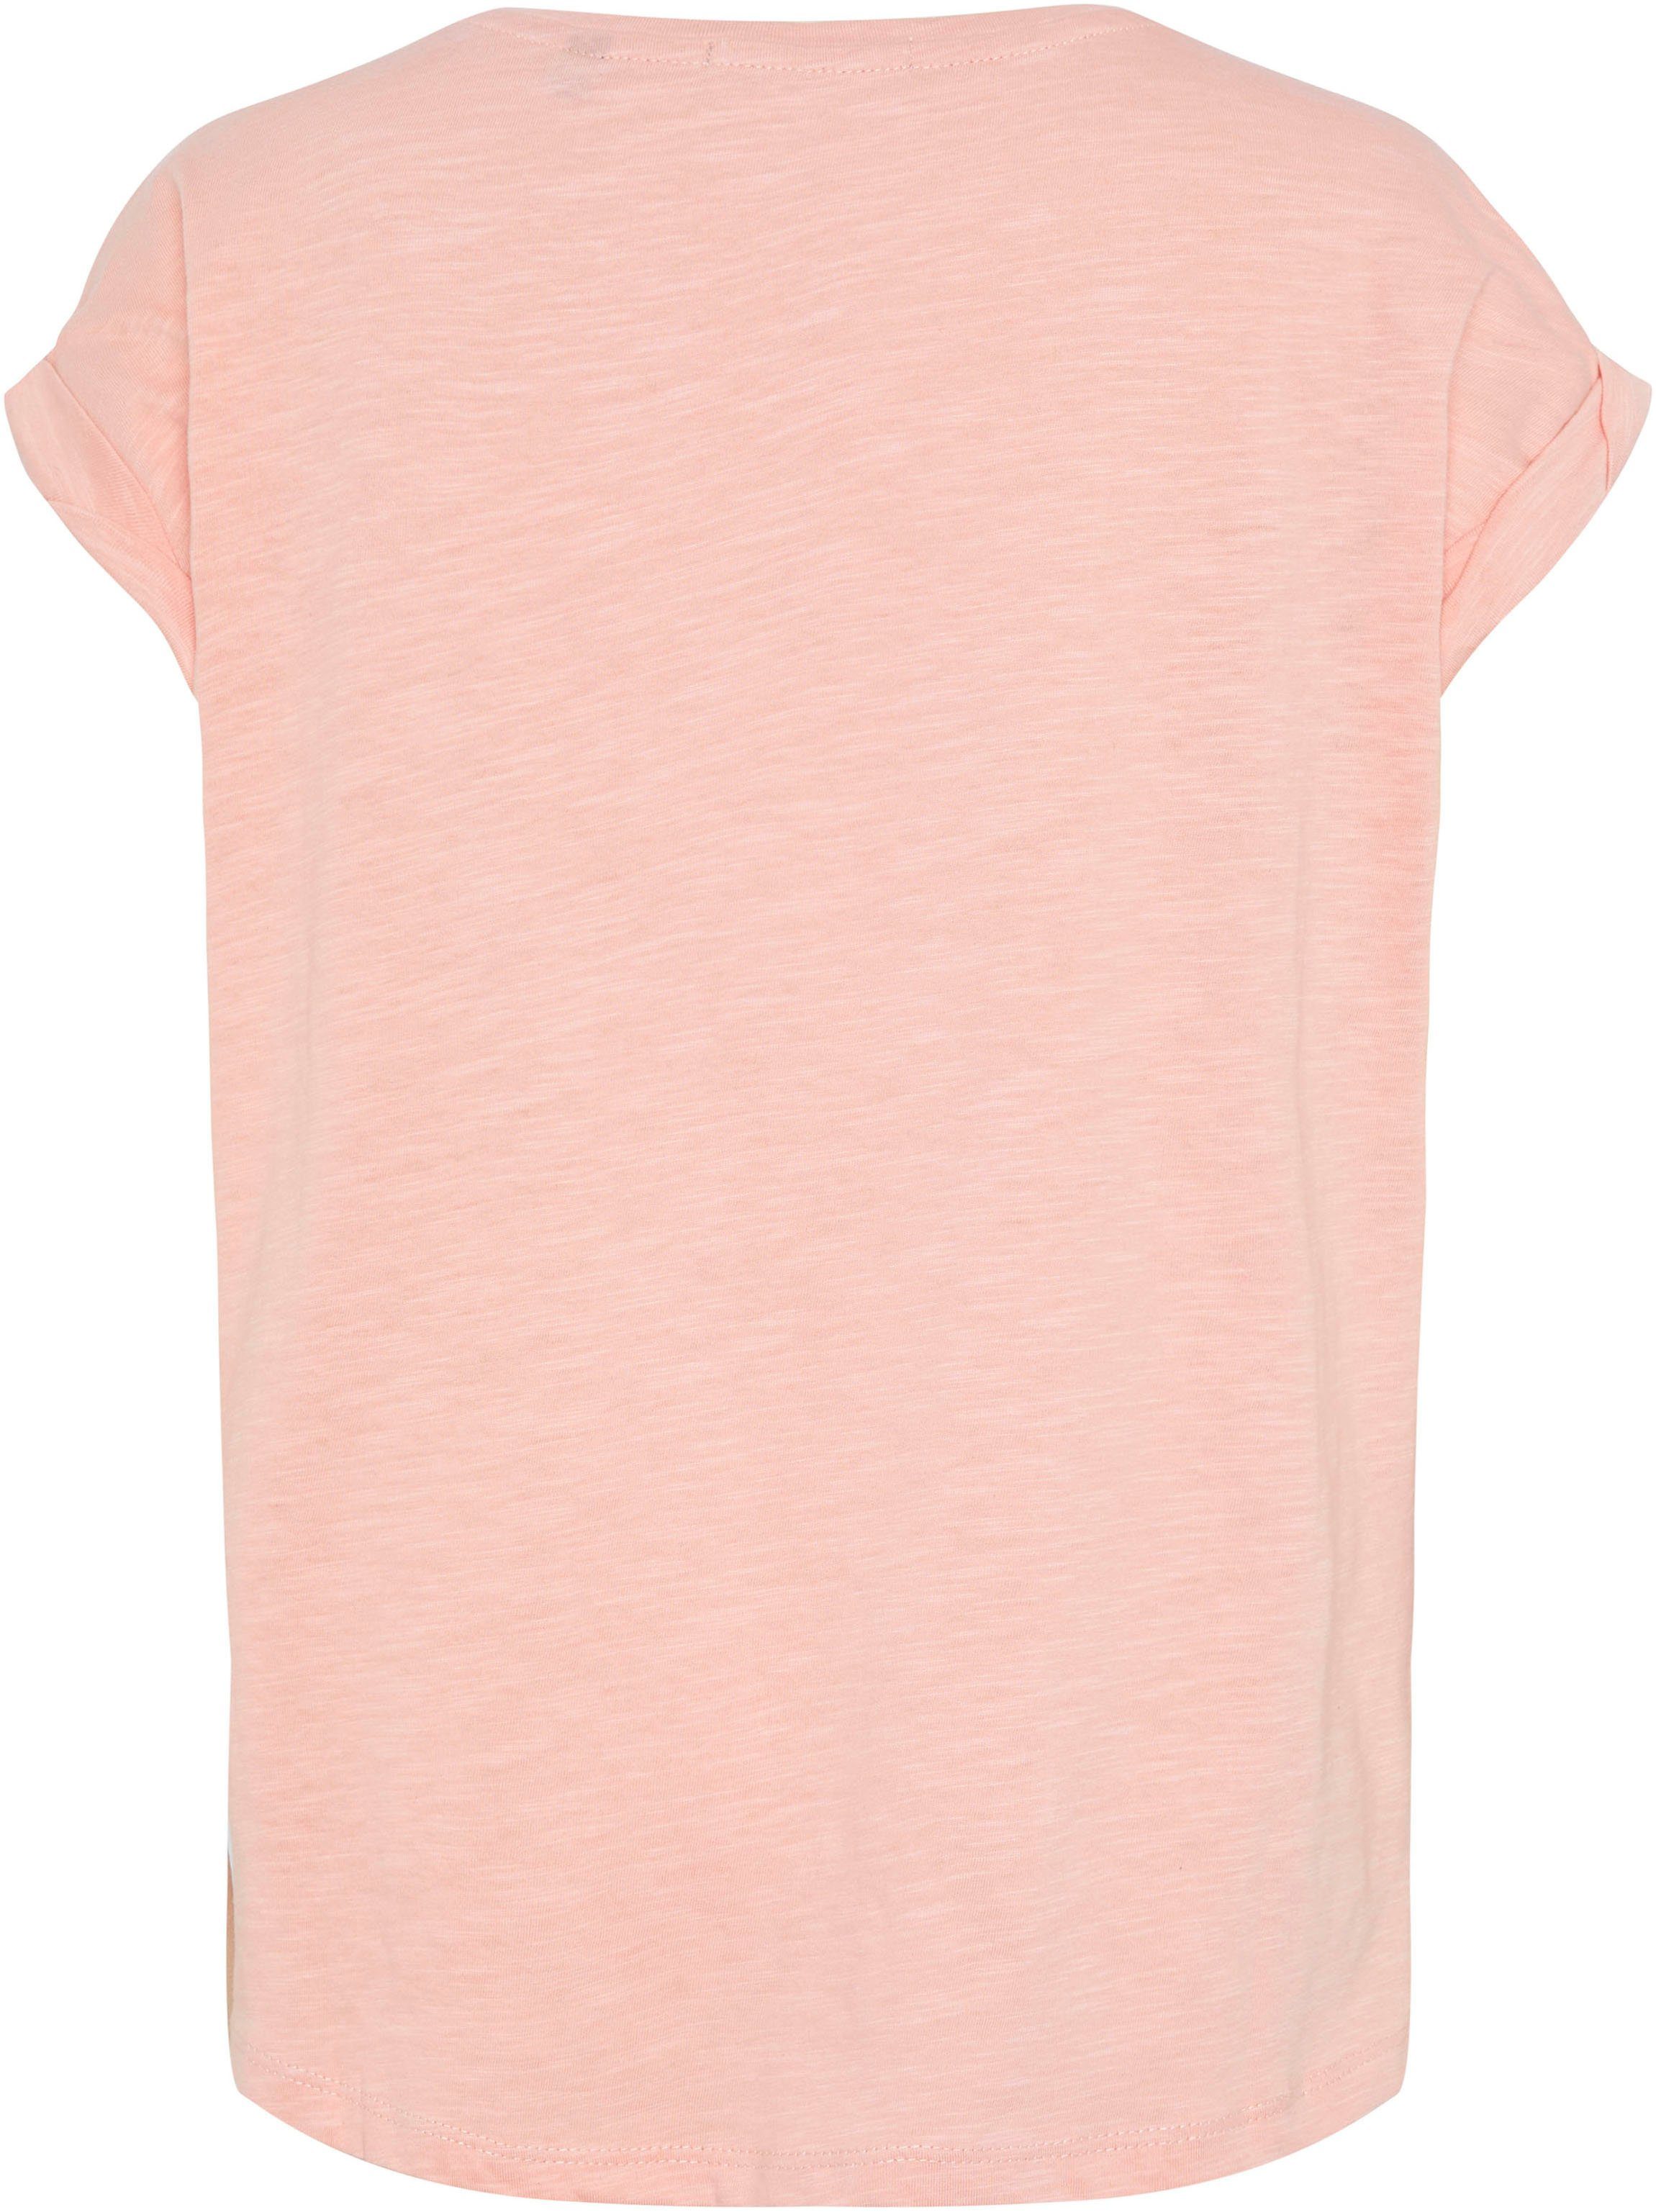 Chiemsee T-Shirt rosa